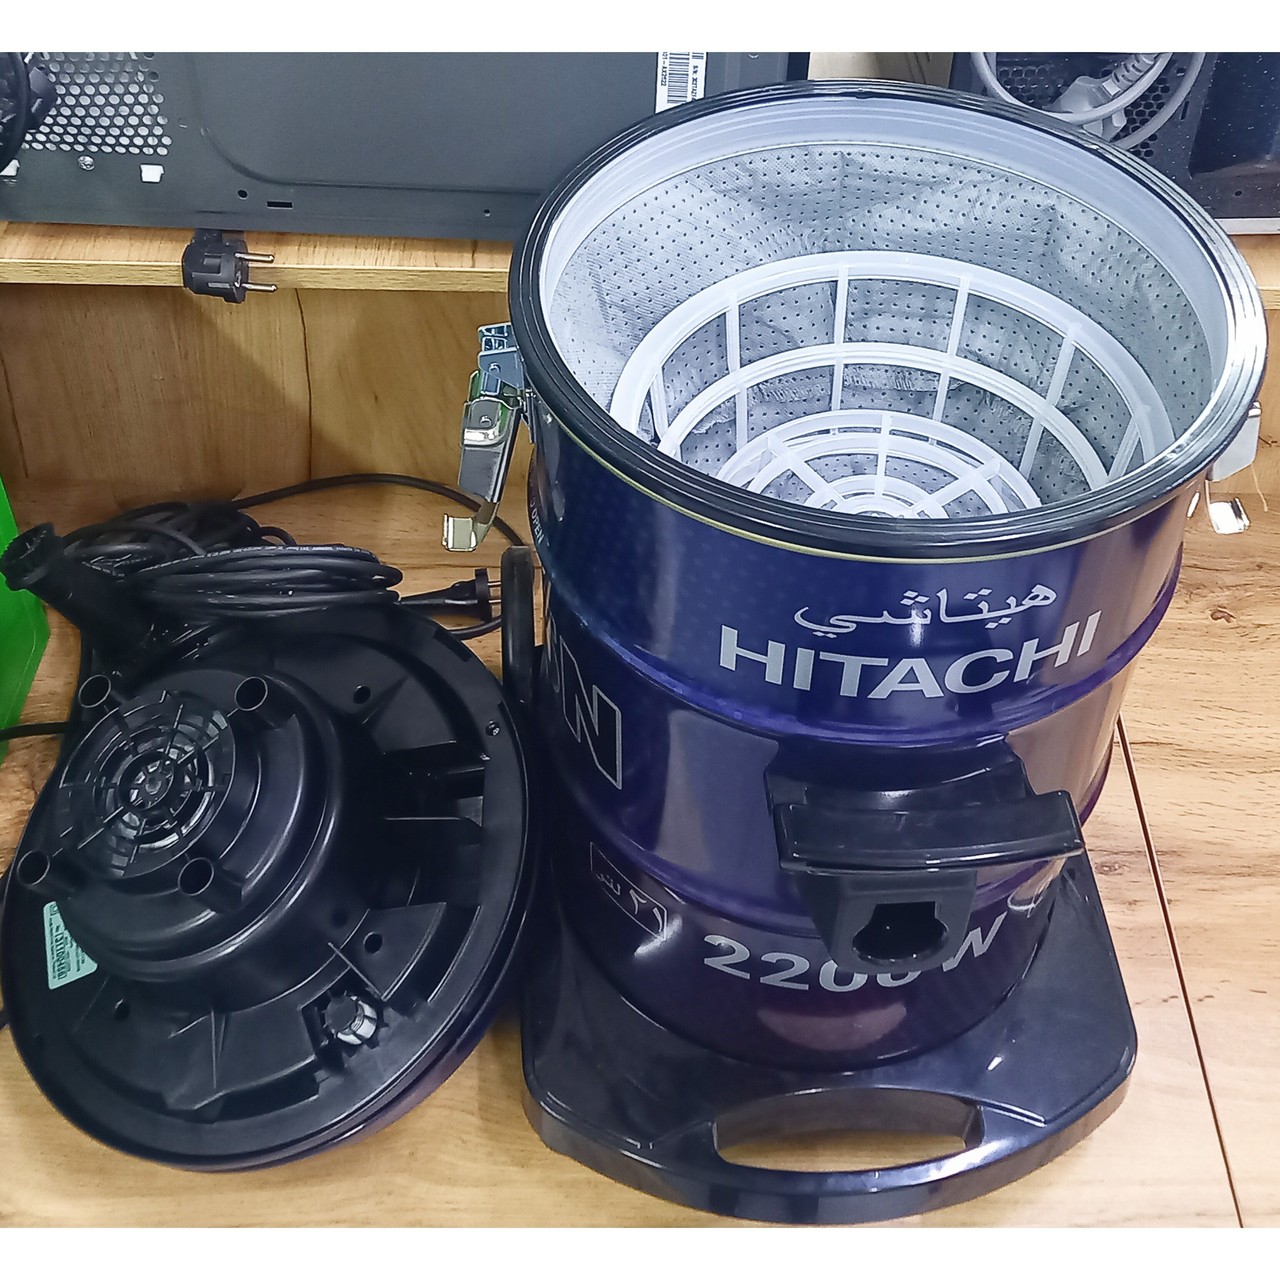 Пылесос Hitachi мощностью 2200 Вт